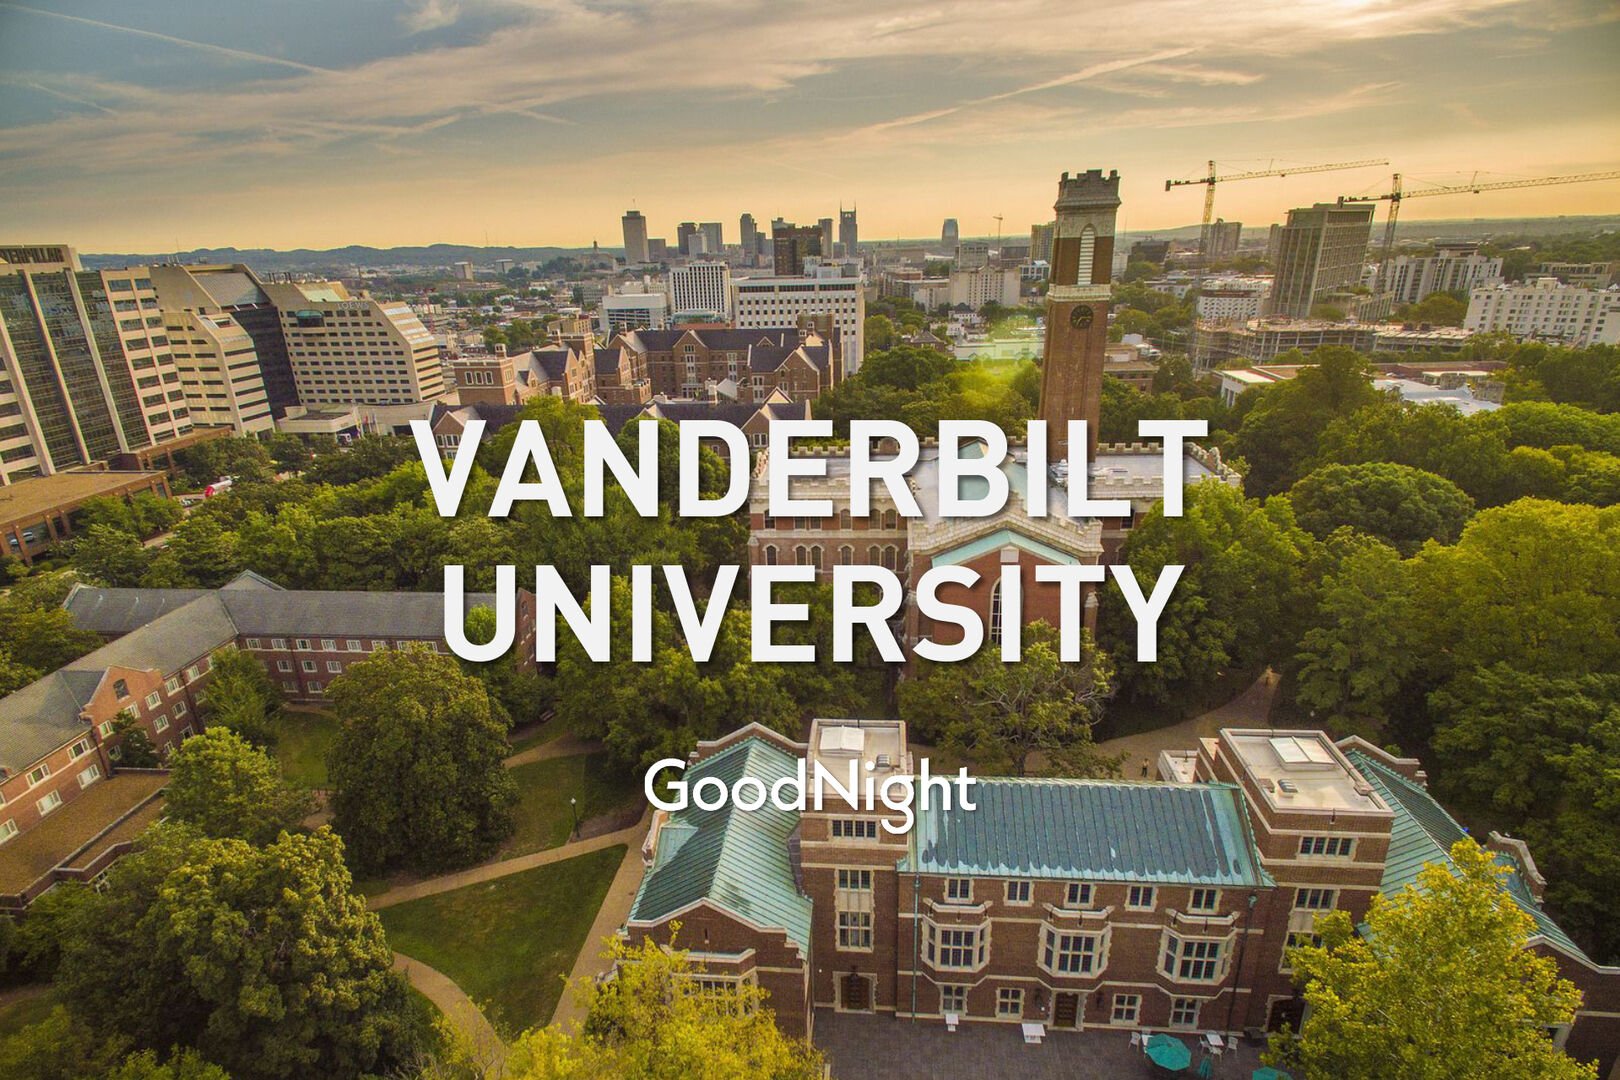 7 mins: Vanderbilt University